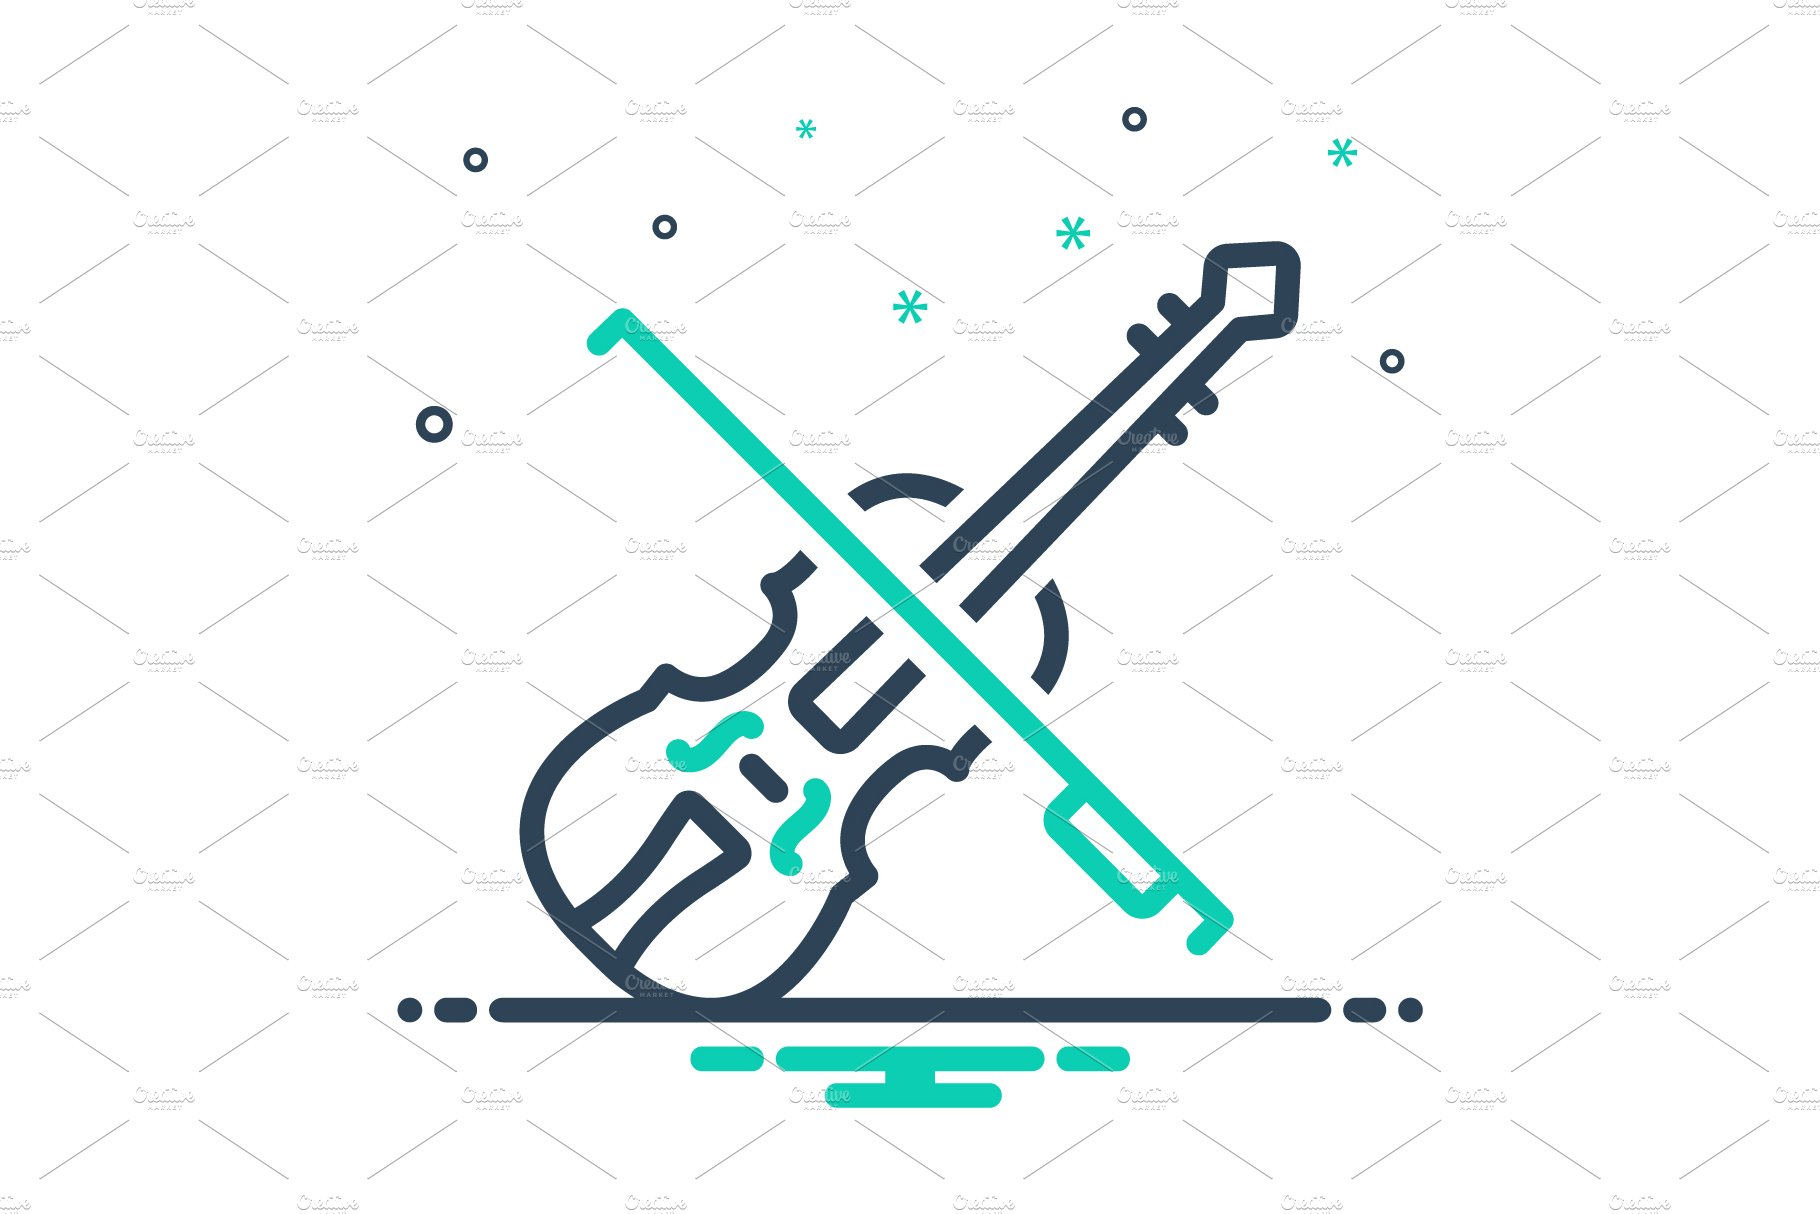 Violin fiddle mix icon cover image.